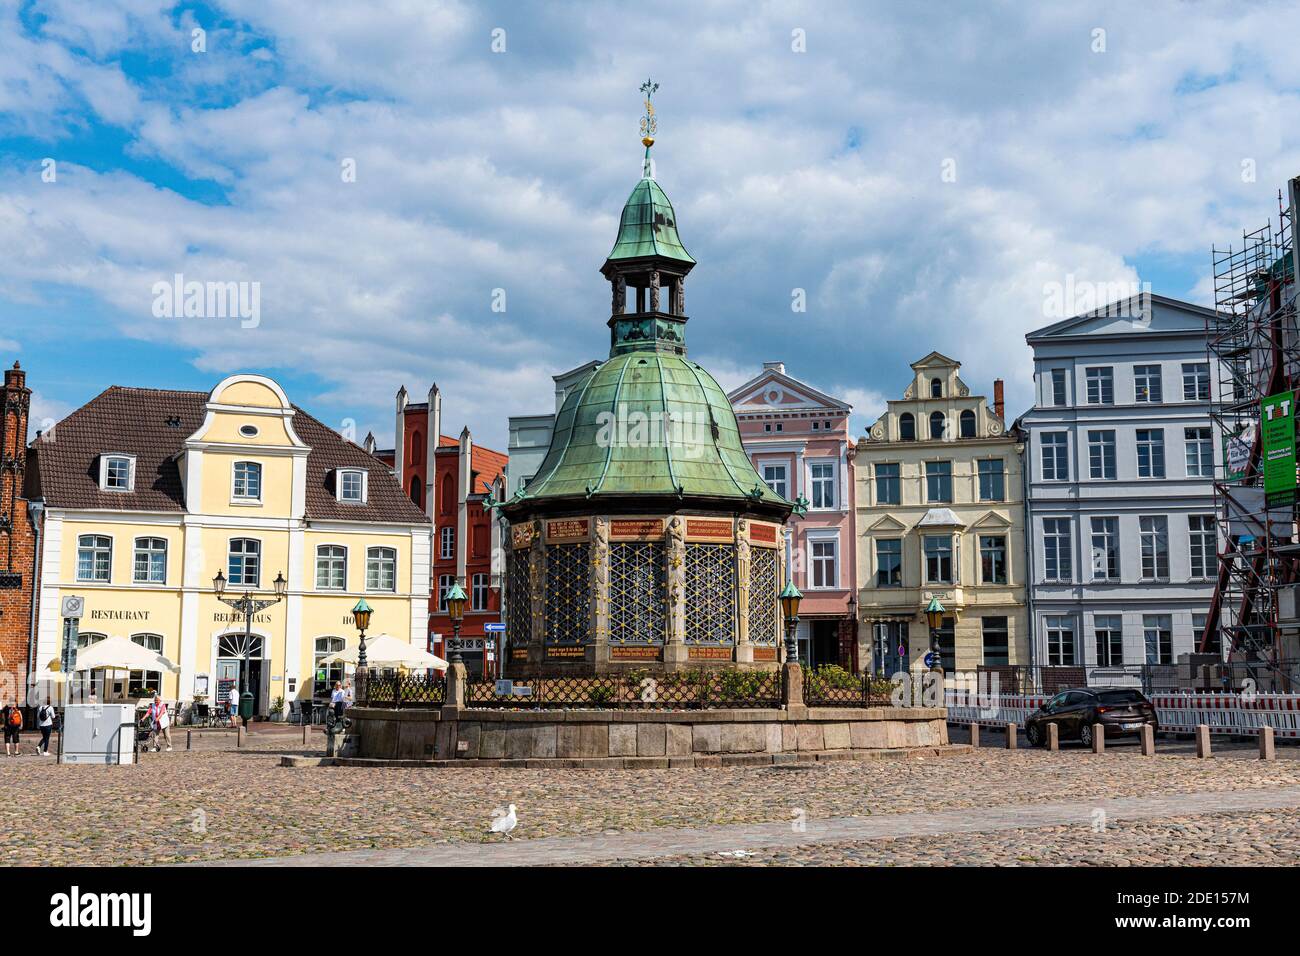 Fontana d'acqua sulla piazza del mercato, città anseatica di Wismar, patrimonio dell'umanità dell'UNESCO, Meclemburgo-Vorpommern, Germania, Europa Foto Stock